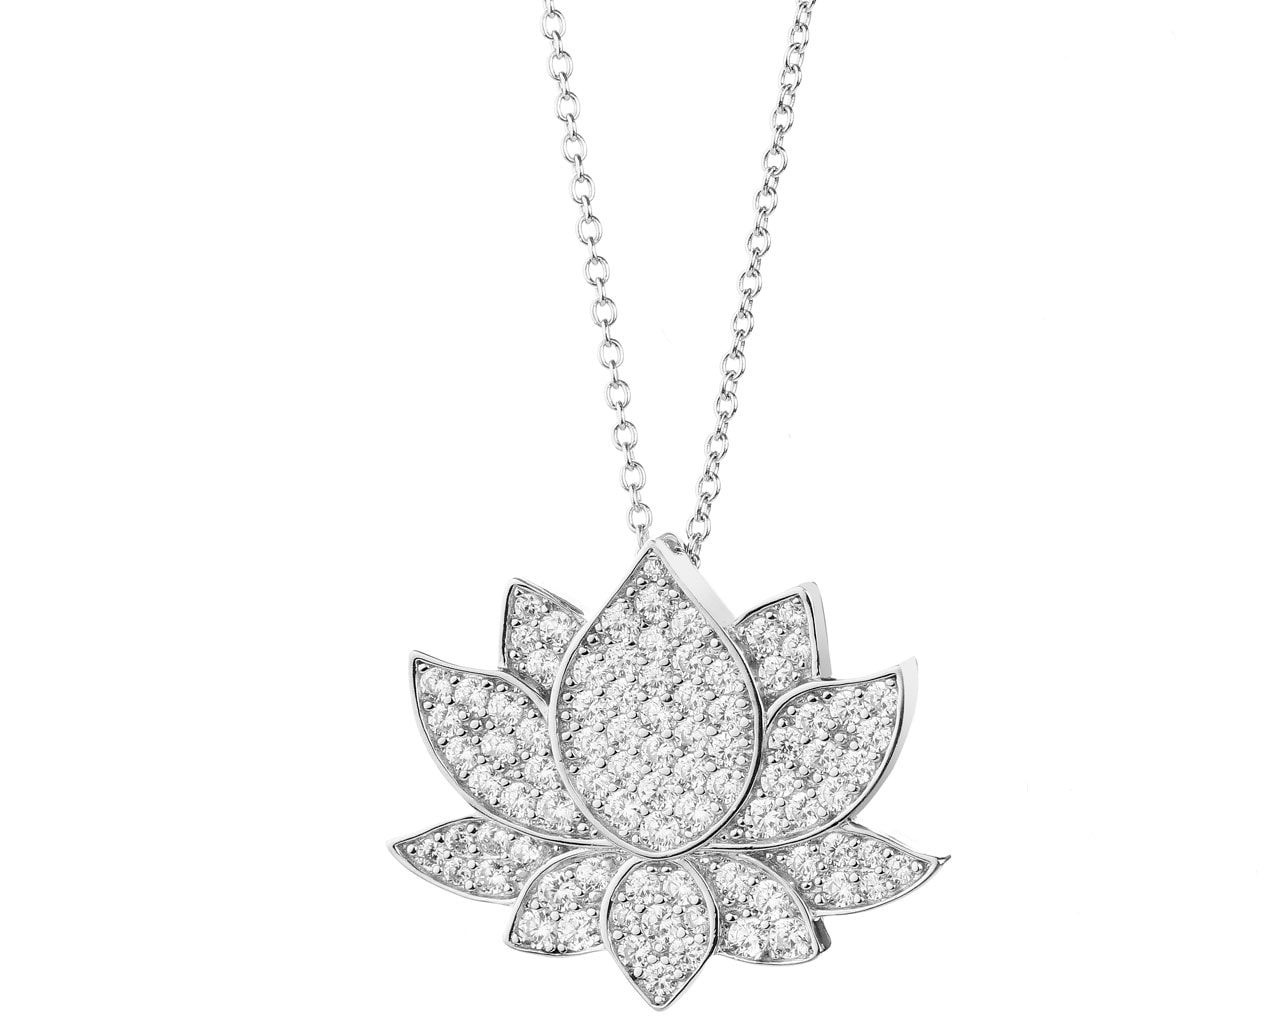 Naszyjnik srebrny z cyrkoniami - kwiat lotosu